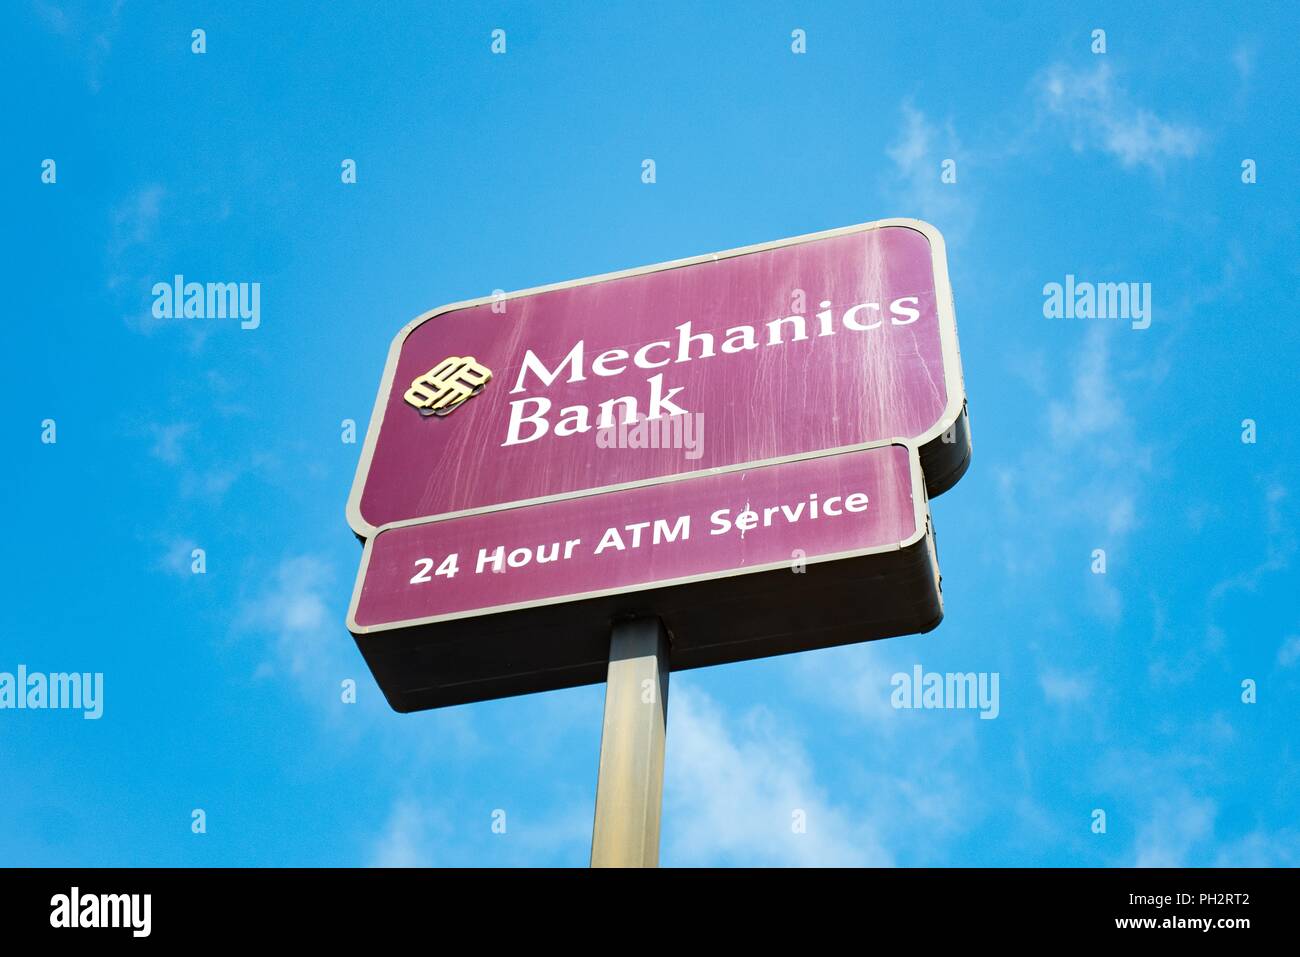 Faible angle de vue de la mécanique signe Banque contre un ciel bleu à Berkeley, Californie, le 14 août 2018. () Banque D'Images